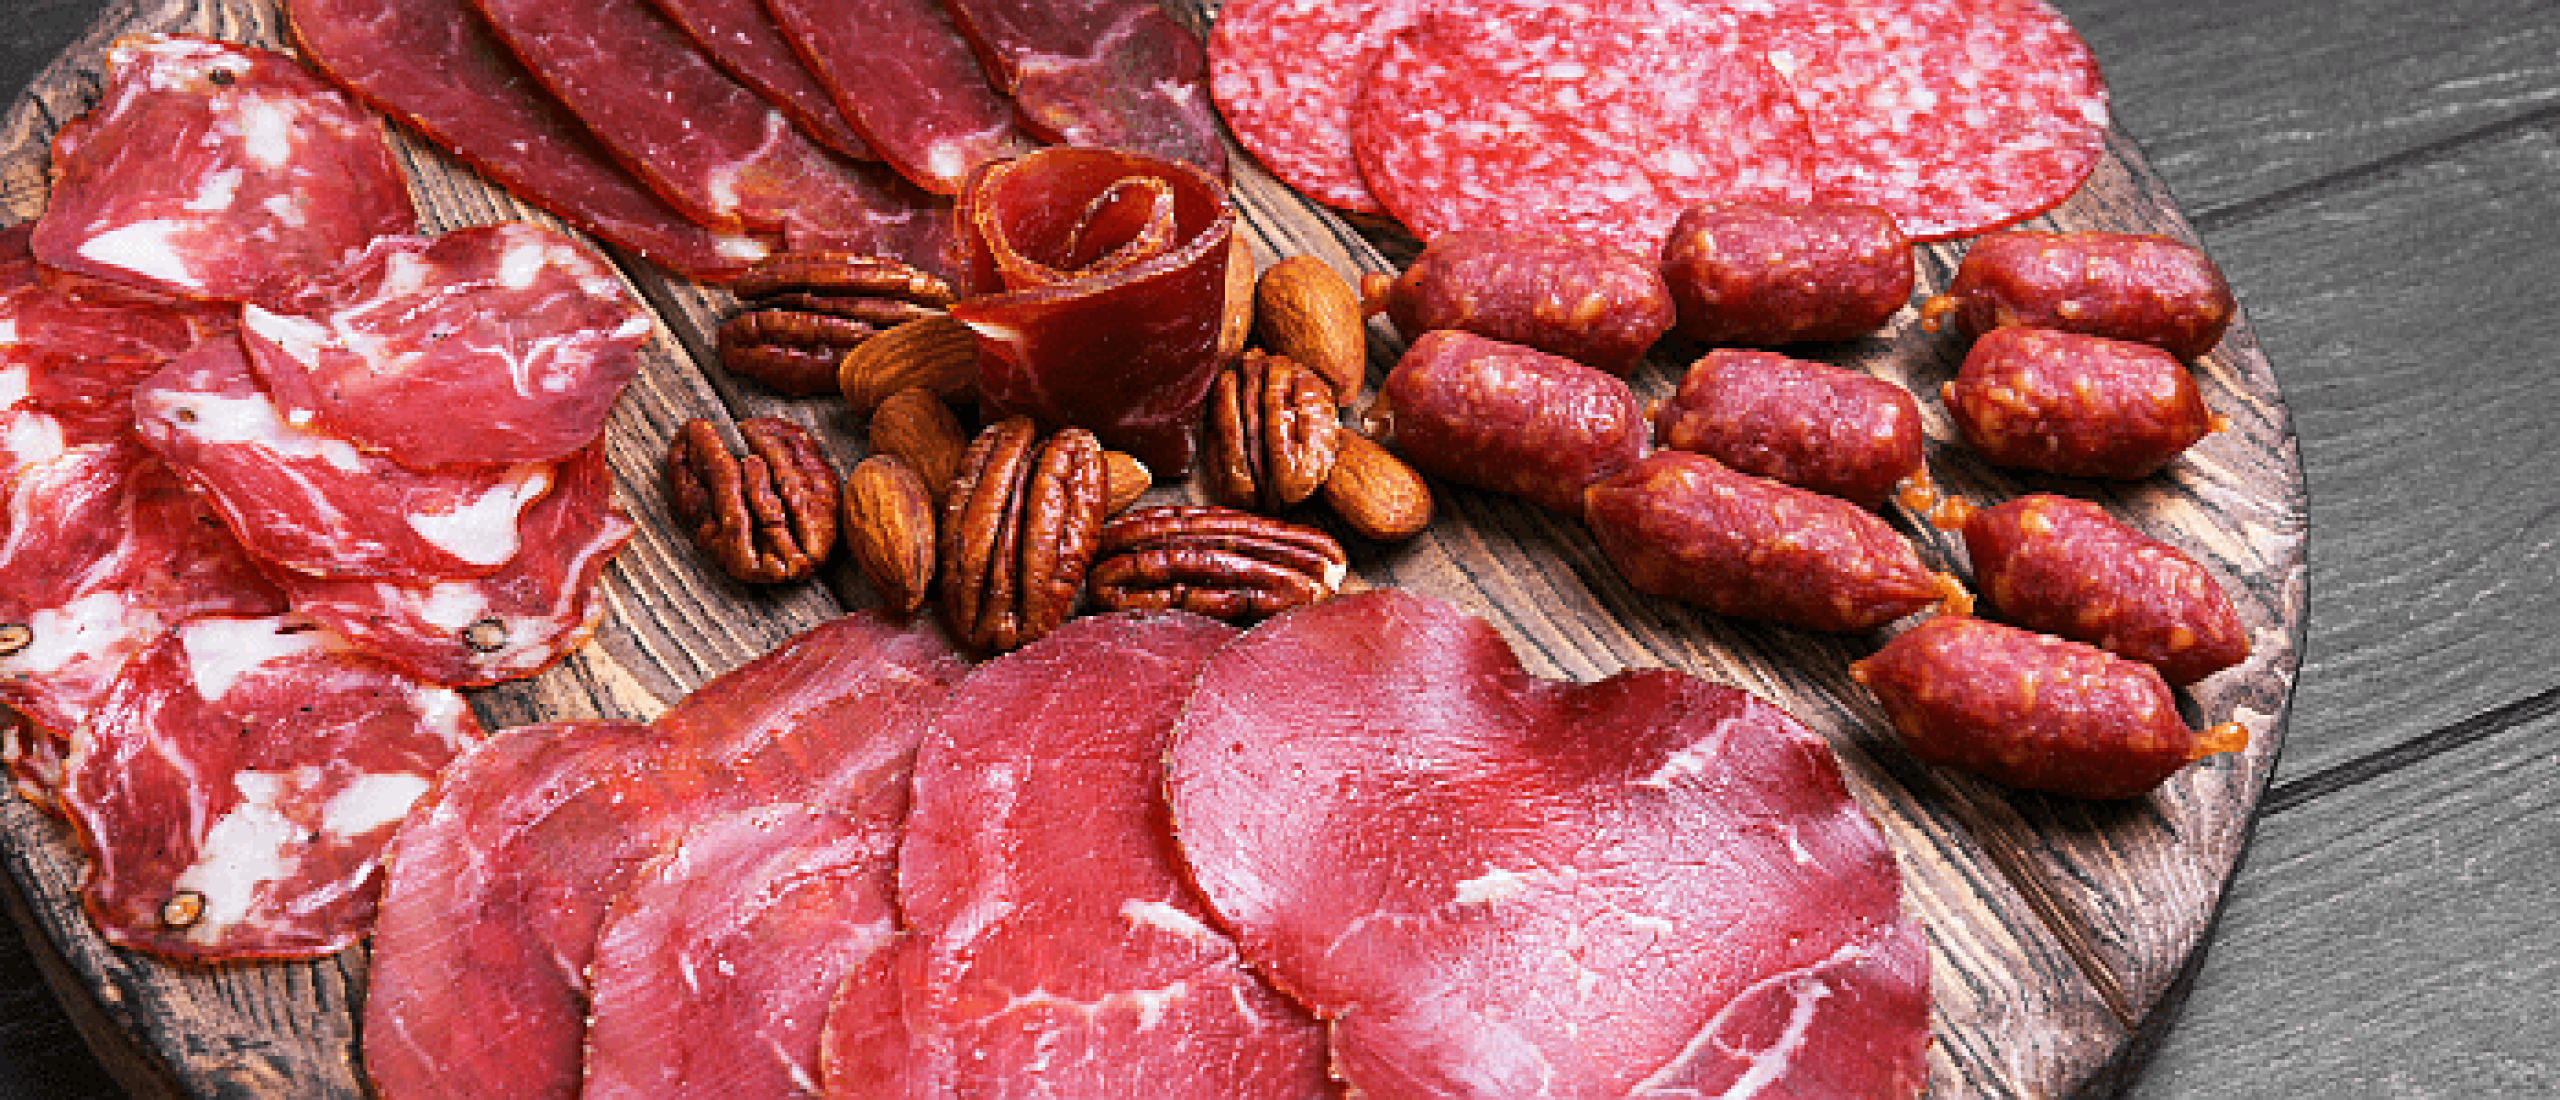 Rood vlees verhoogt risico op kanker